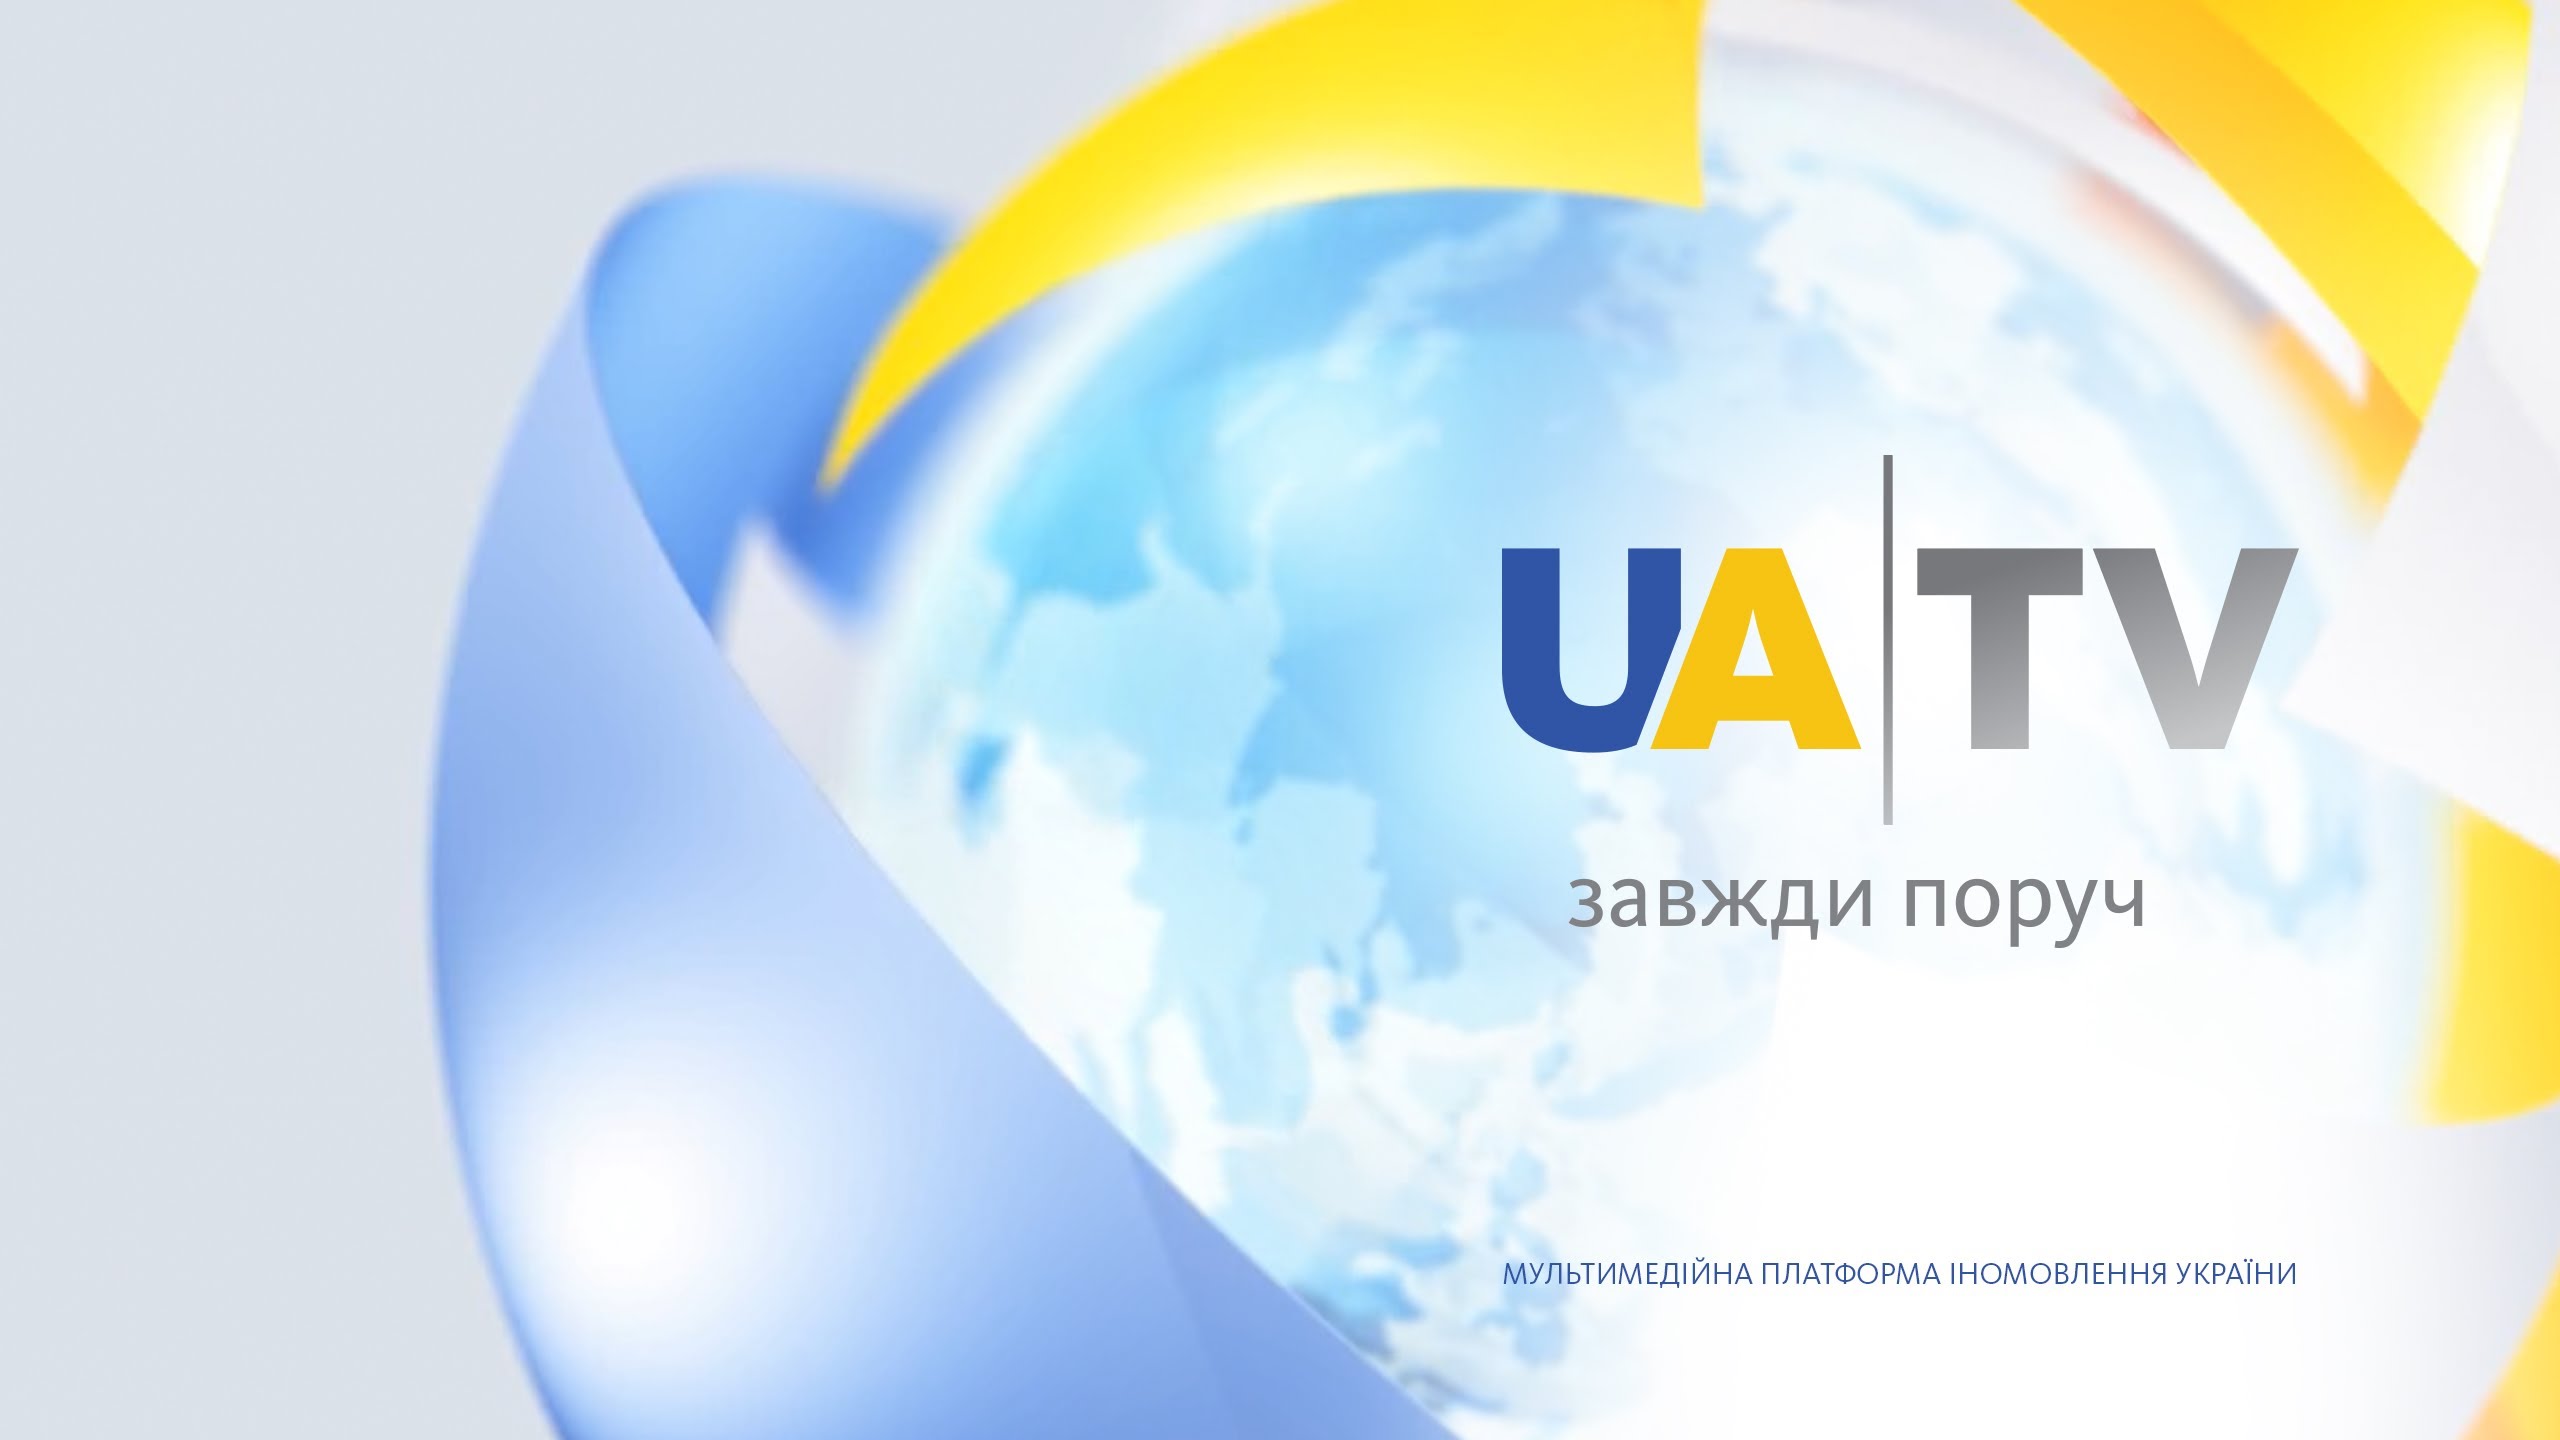 UATV став доступним для абонентів OTT-сервісу Kartina.tv